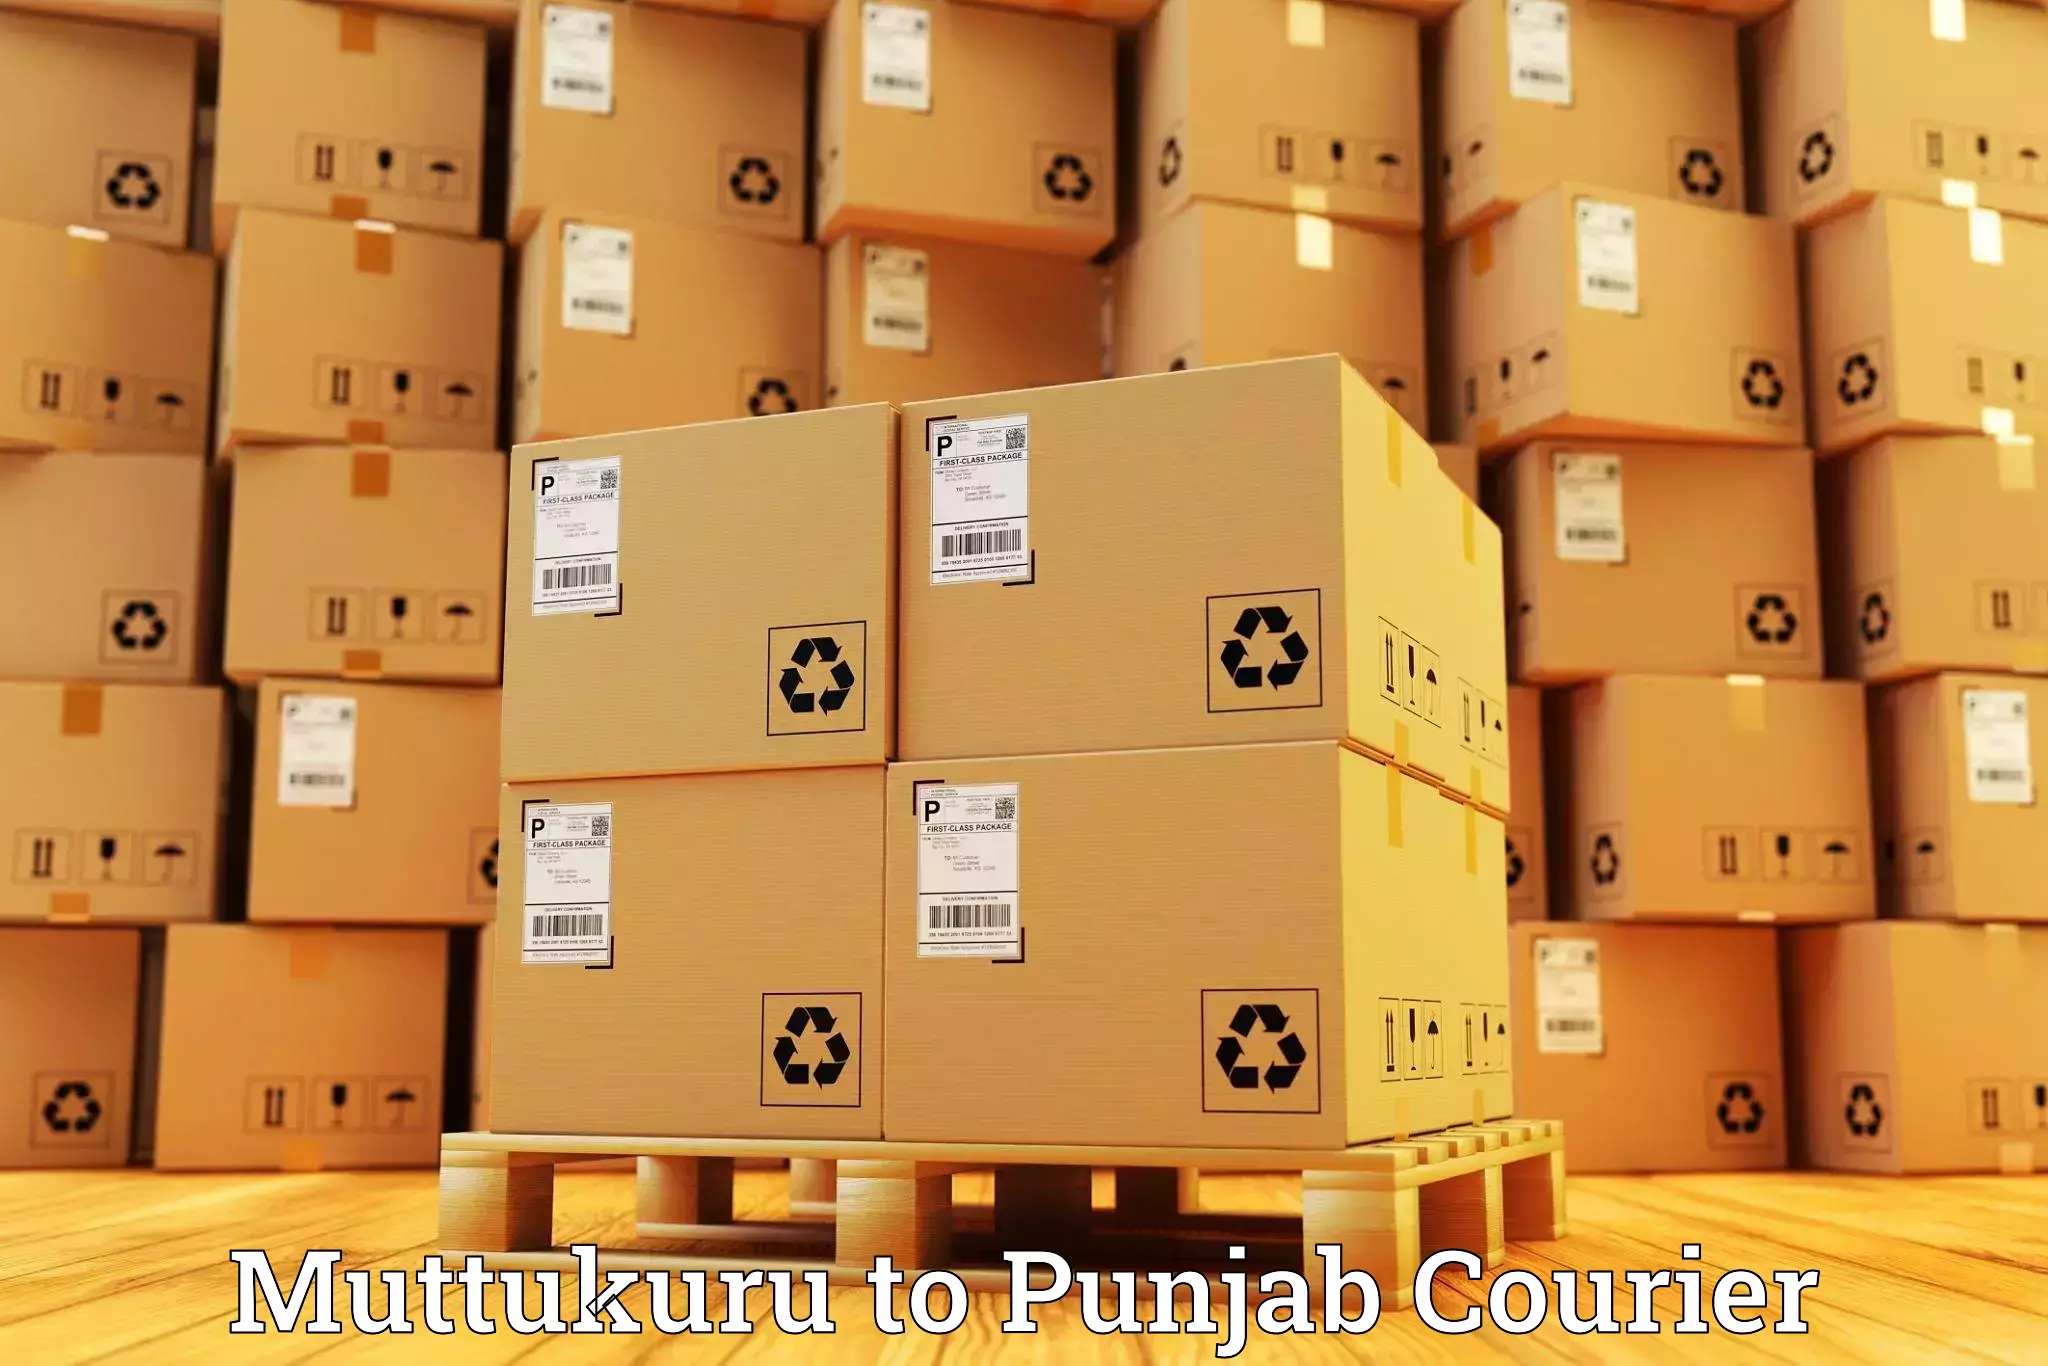 Global shipping solutions Muttukuru to Ajnala